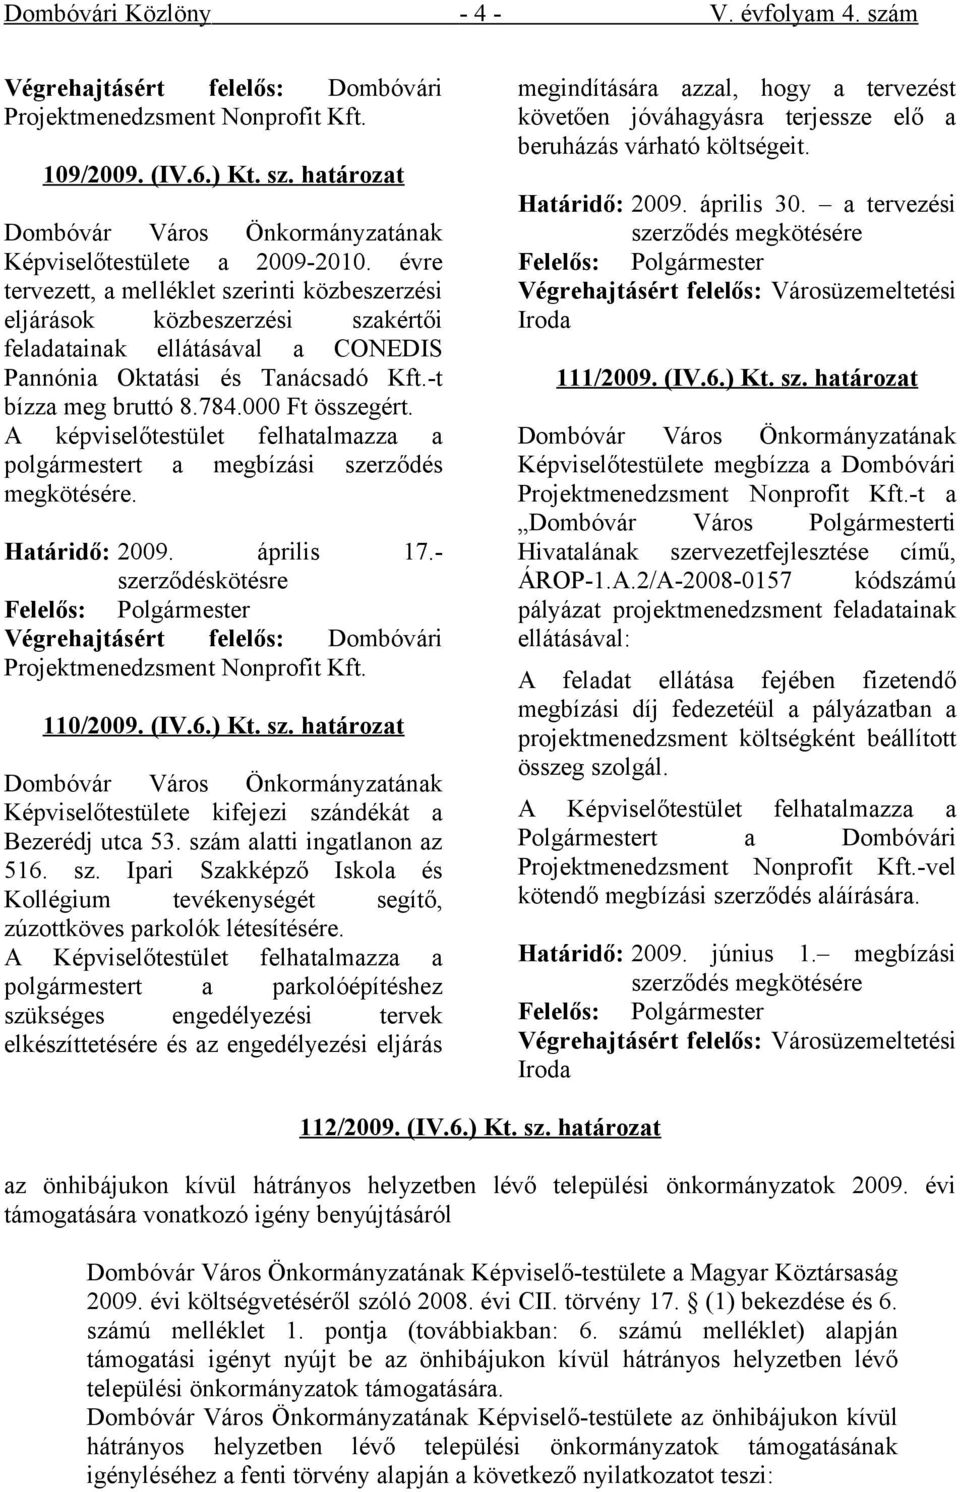 A képviselőtestület felhatalmazza a polgármestert a megbízási szerződés megkötésére. Határidő: 2009. április 17.- szerződéskötésre Végrehajtásért felelős: Dombóvári Projektmenedzsment Nonprofit Kft.